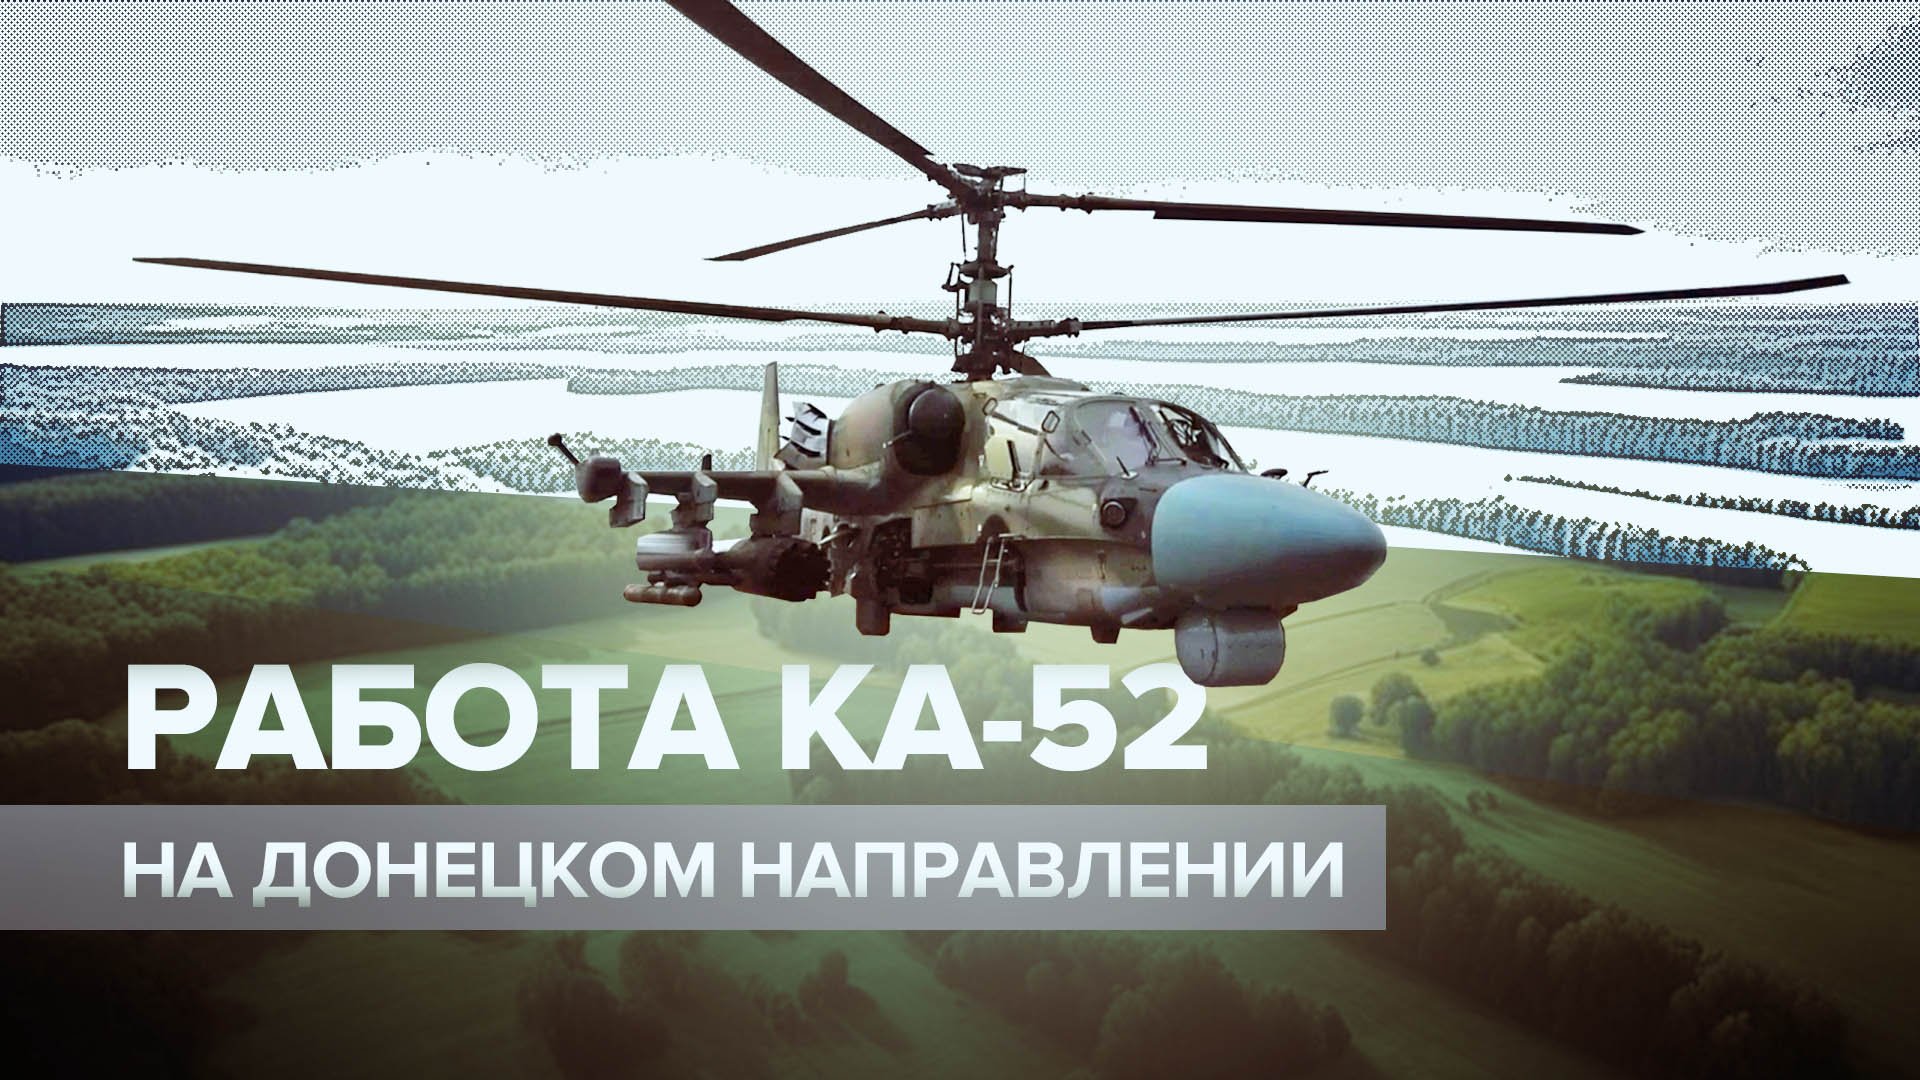 Точные удары по ВСУ: вертолёты Ка-52 уничтожили пункт управления противника на Донецком направлении